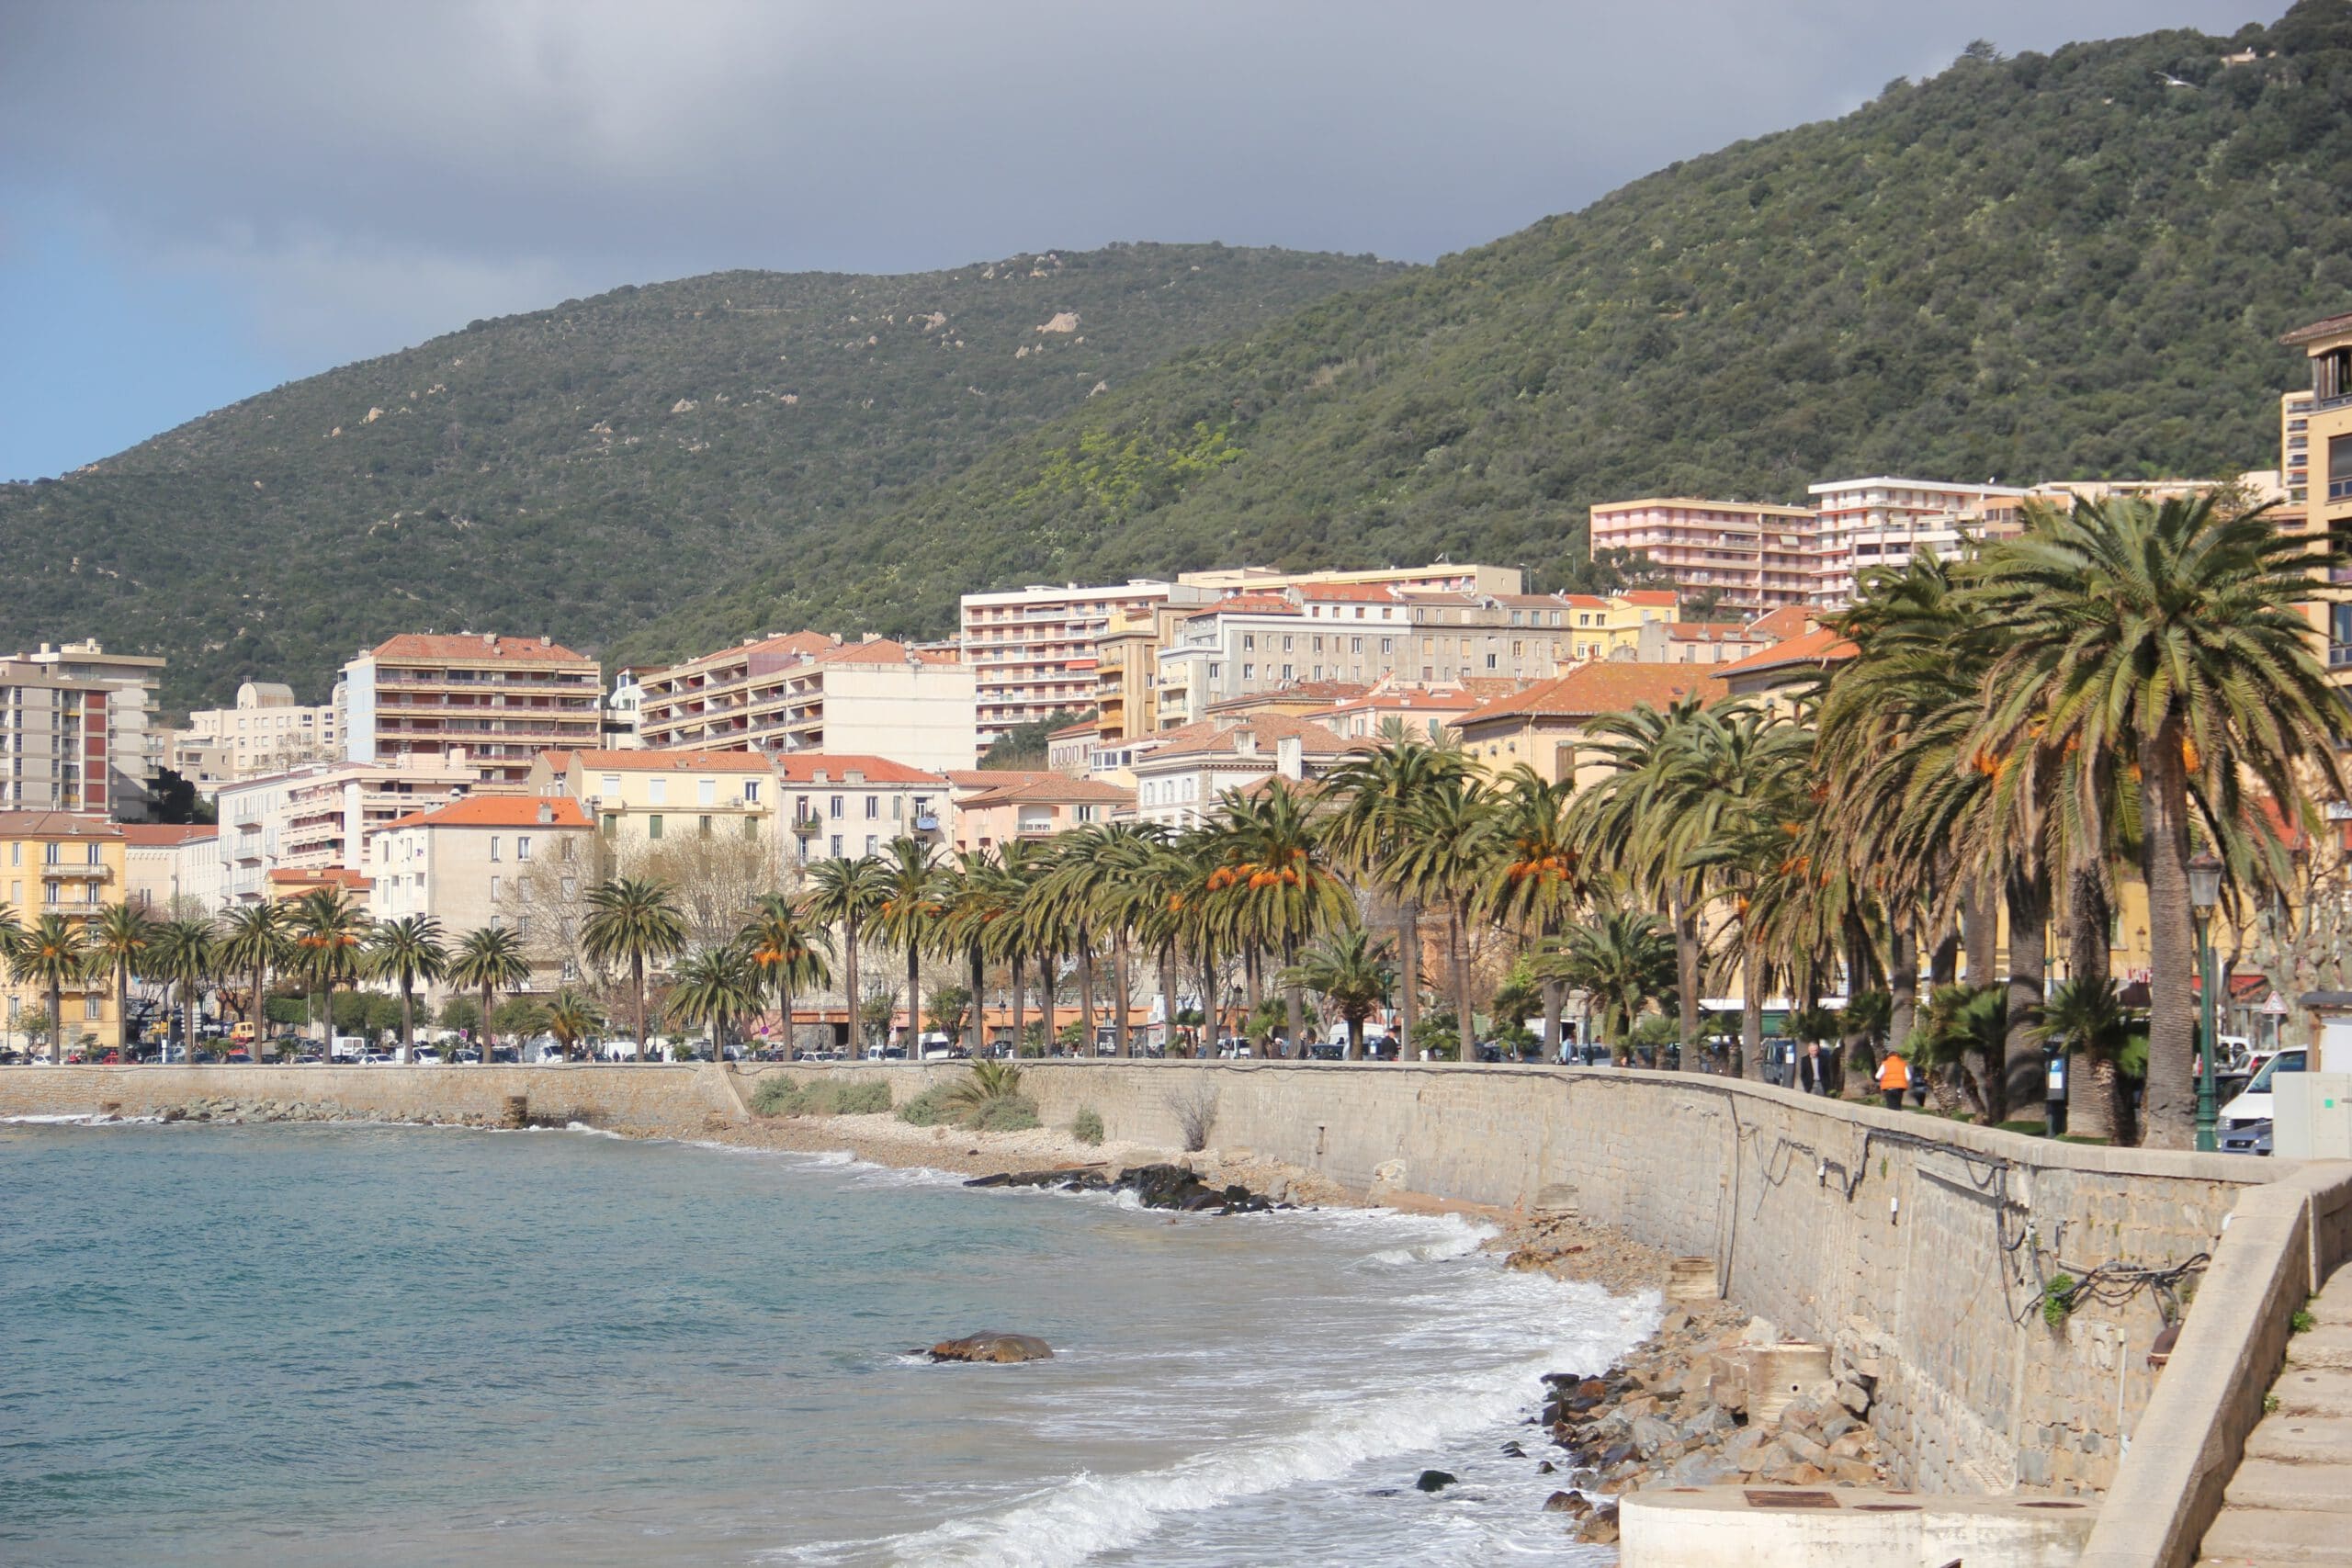 Frankrijk-Corsica-Ajaccio-cruise-haven-stad